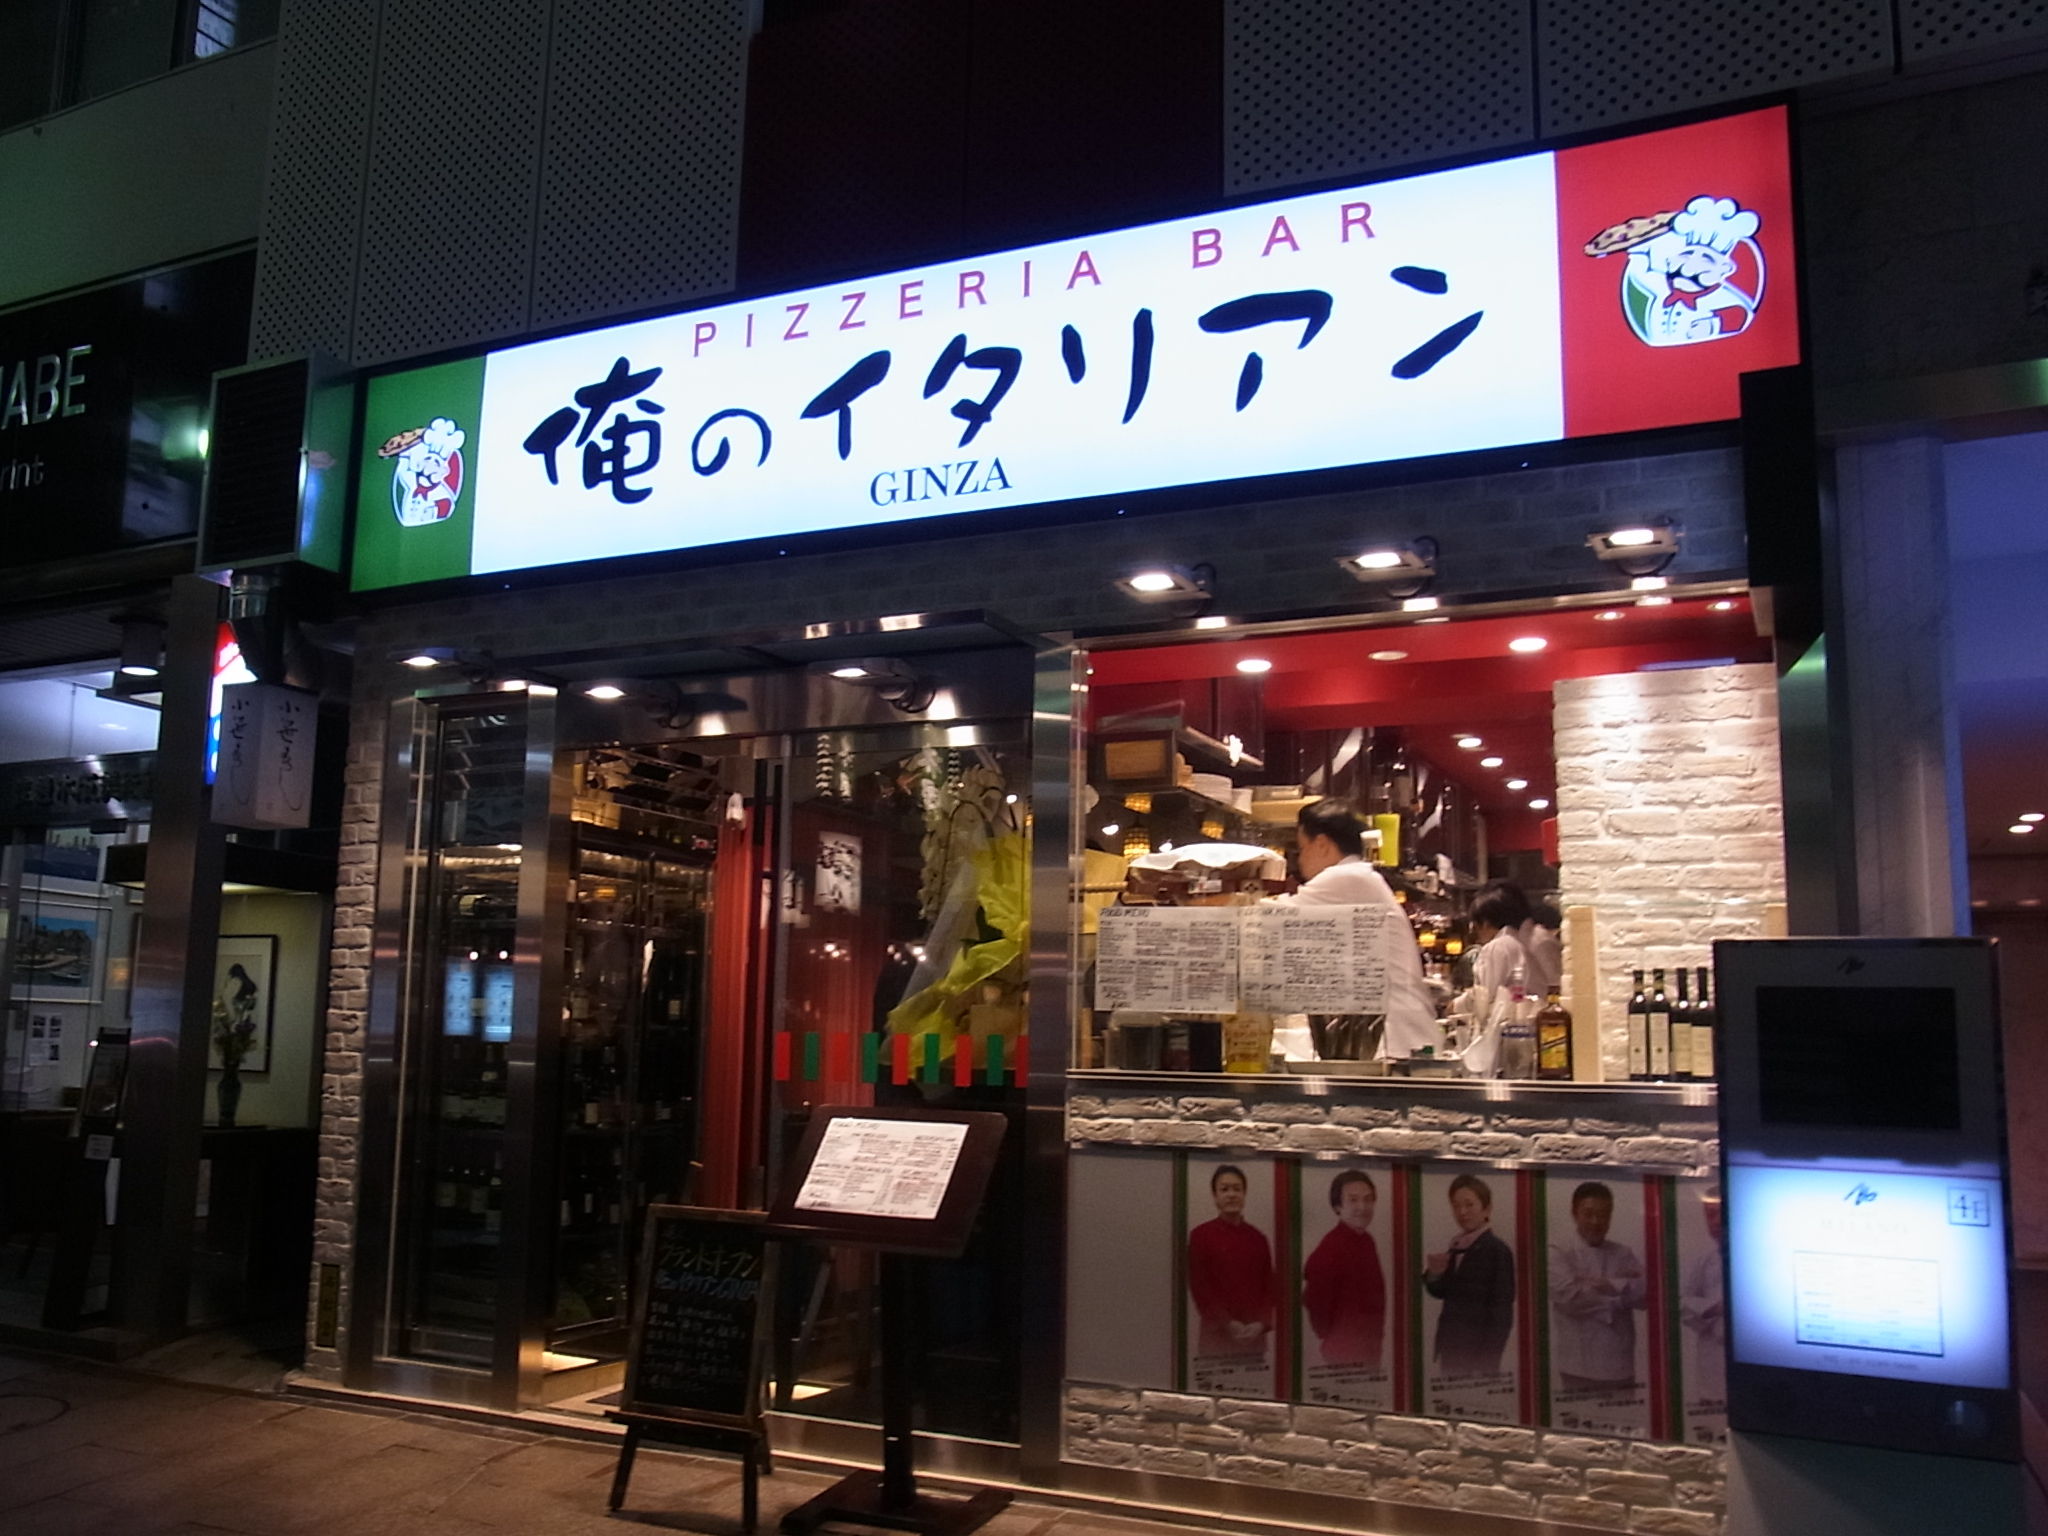 일본 합리적인 가격의 이탈리안 음식 체인점 오레노 이탈리안(俺のイタリアン) ＊＊ - 스퀘어 카테고리